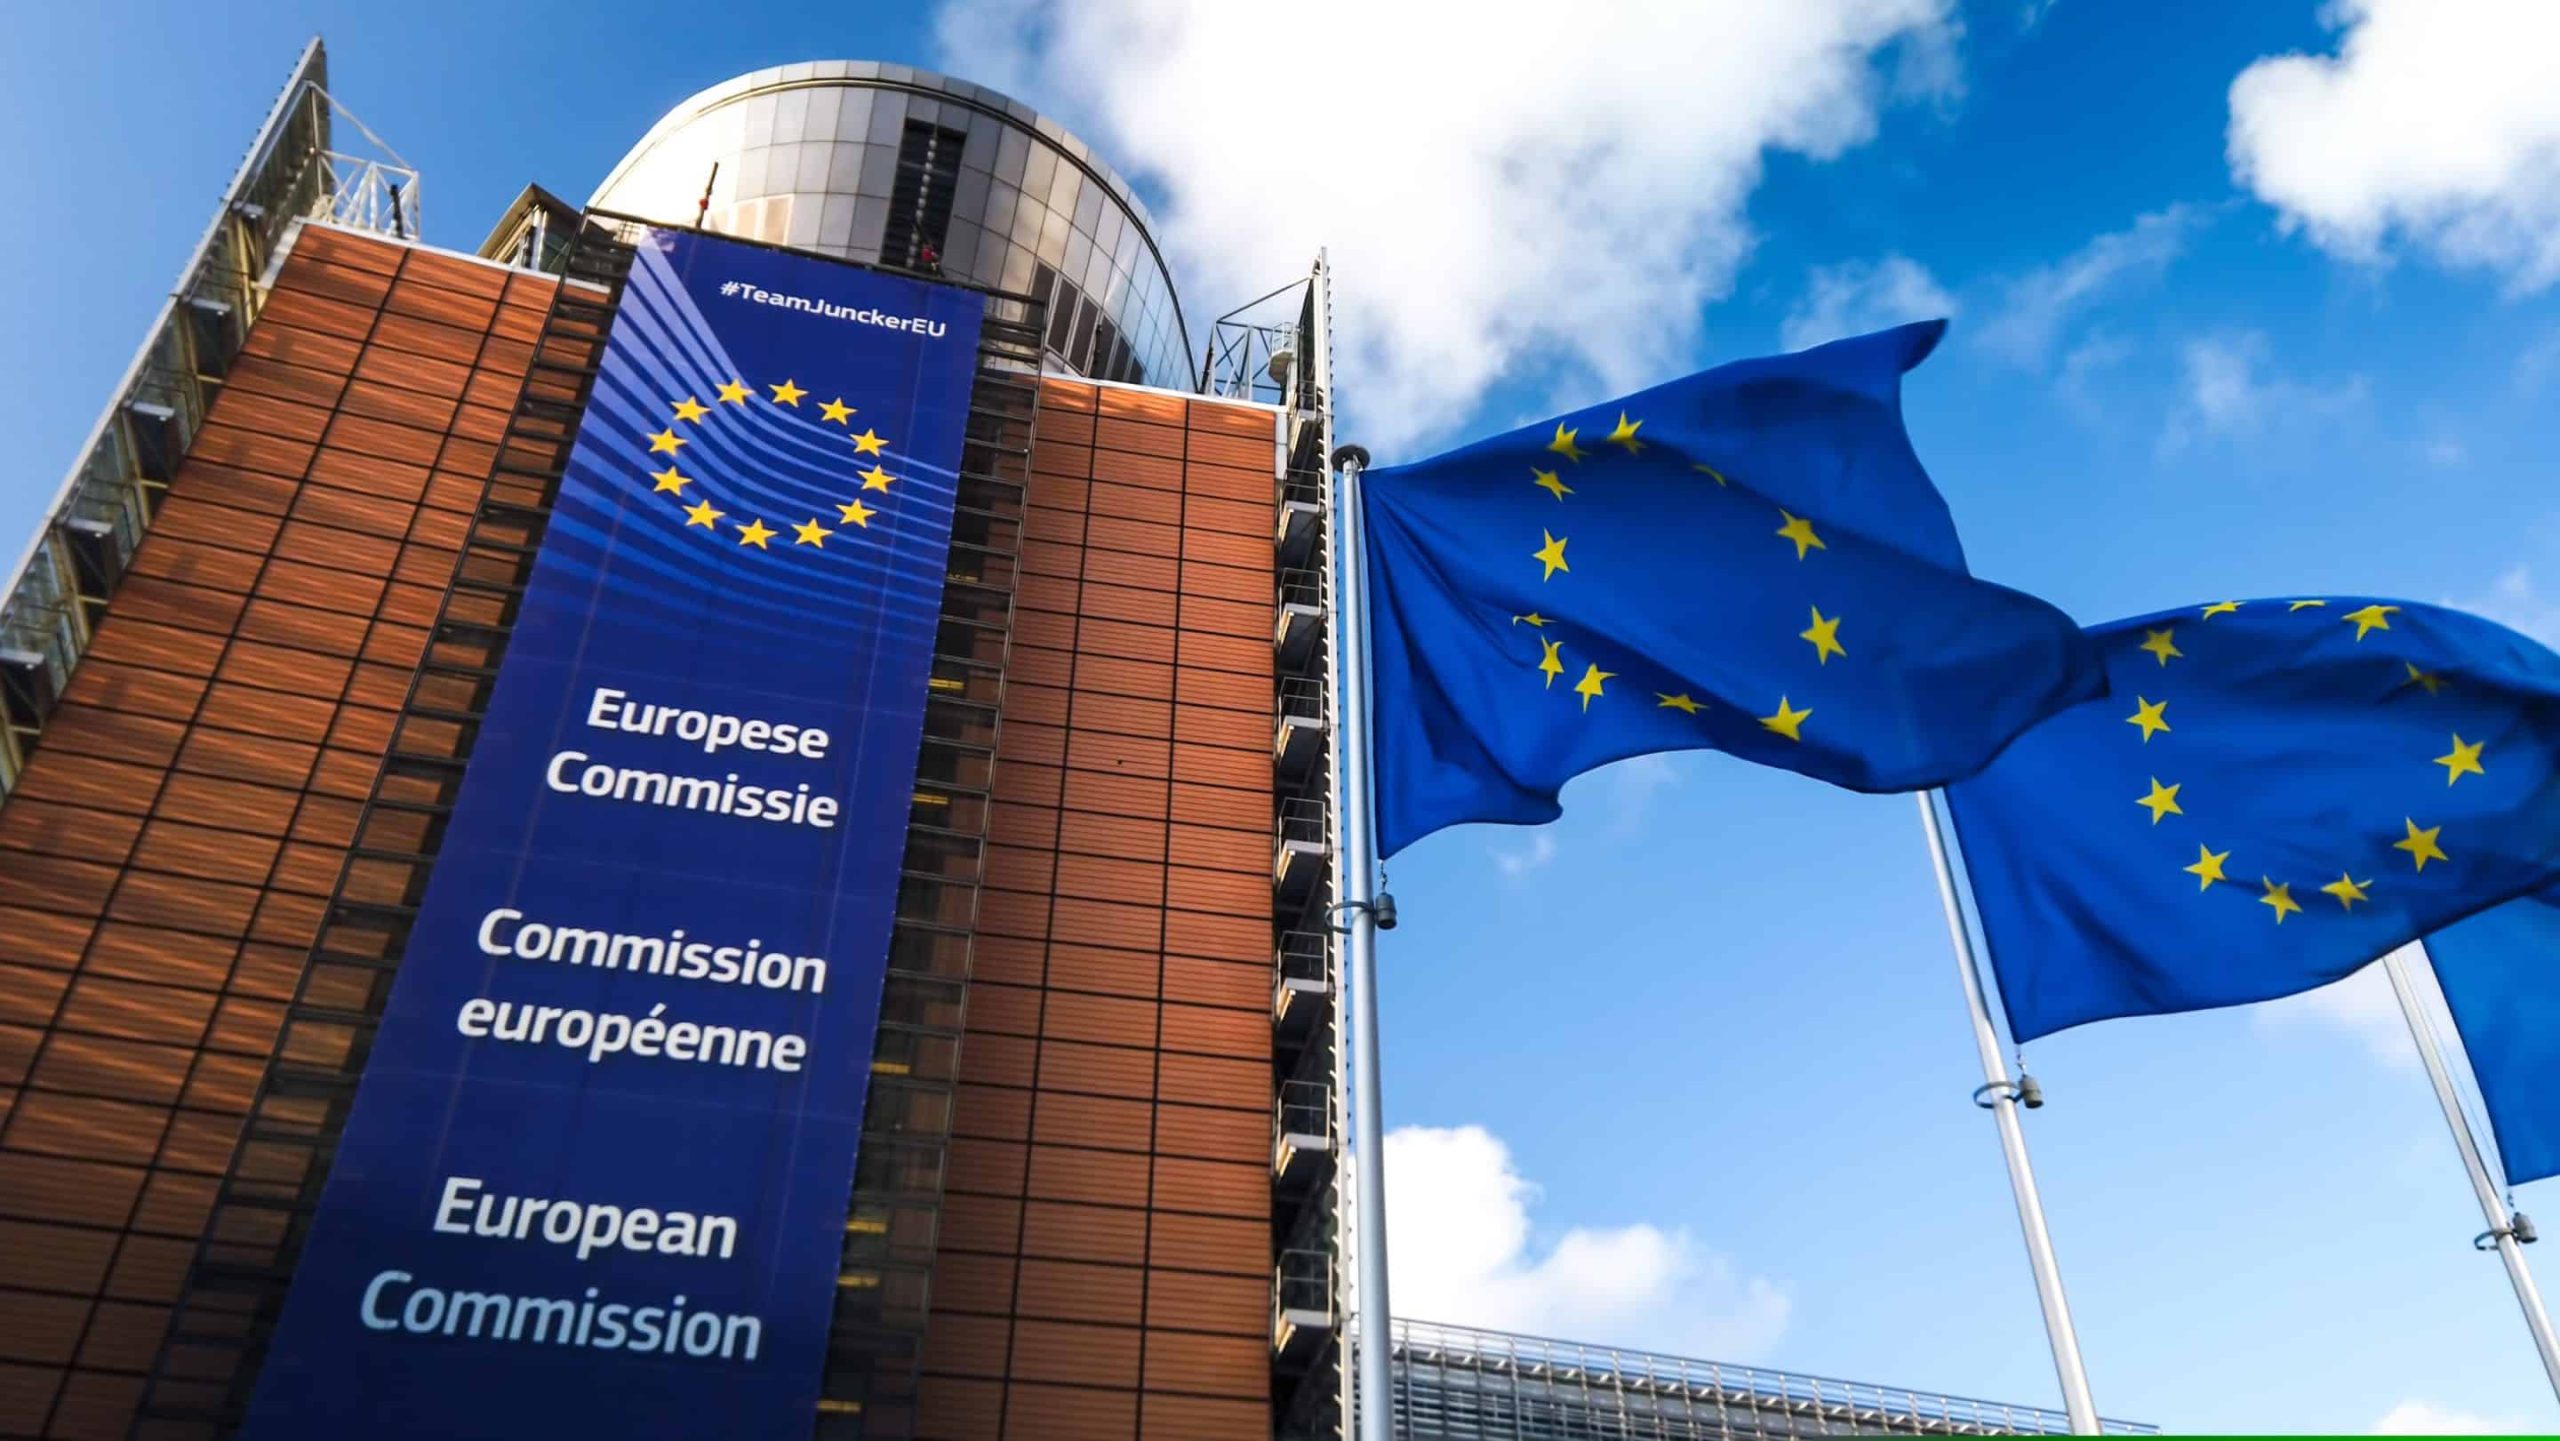 TTLA: Europos Komisija atsižvelgė į Lietuvos verslo pastabas – panaikintas taisyklės taikymas priekaboms ir puspriekabėms